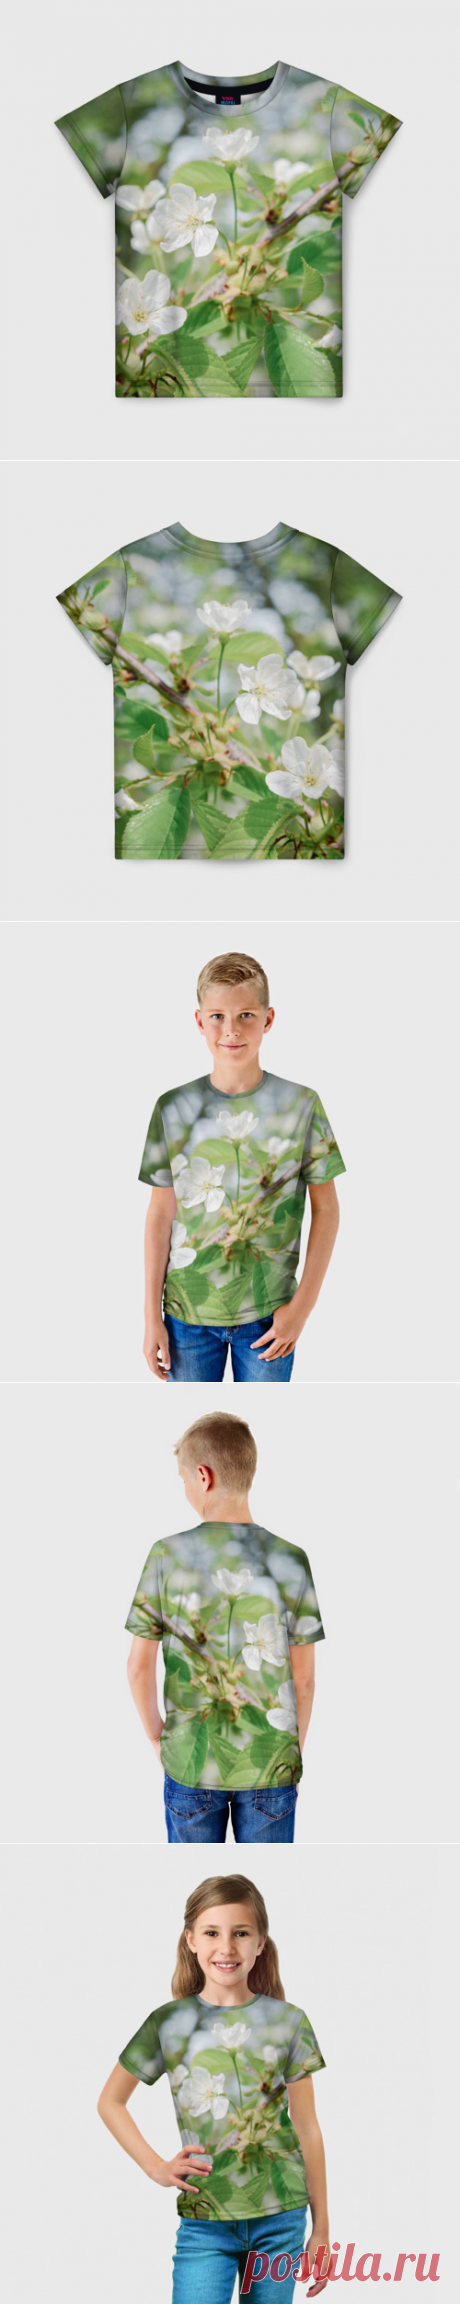 Детская футболка 3D Цветущая ветка вишни, фото - купить по цене 1320 руб в интернет-магазине Всемайки, арт 3652995